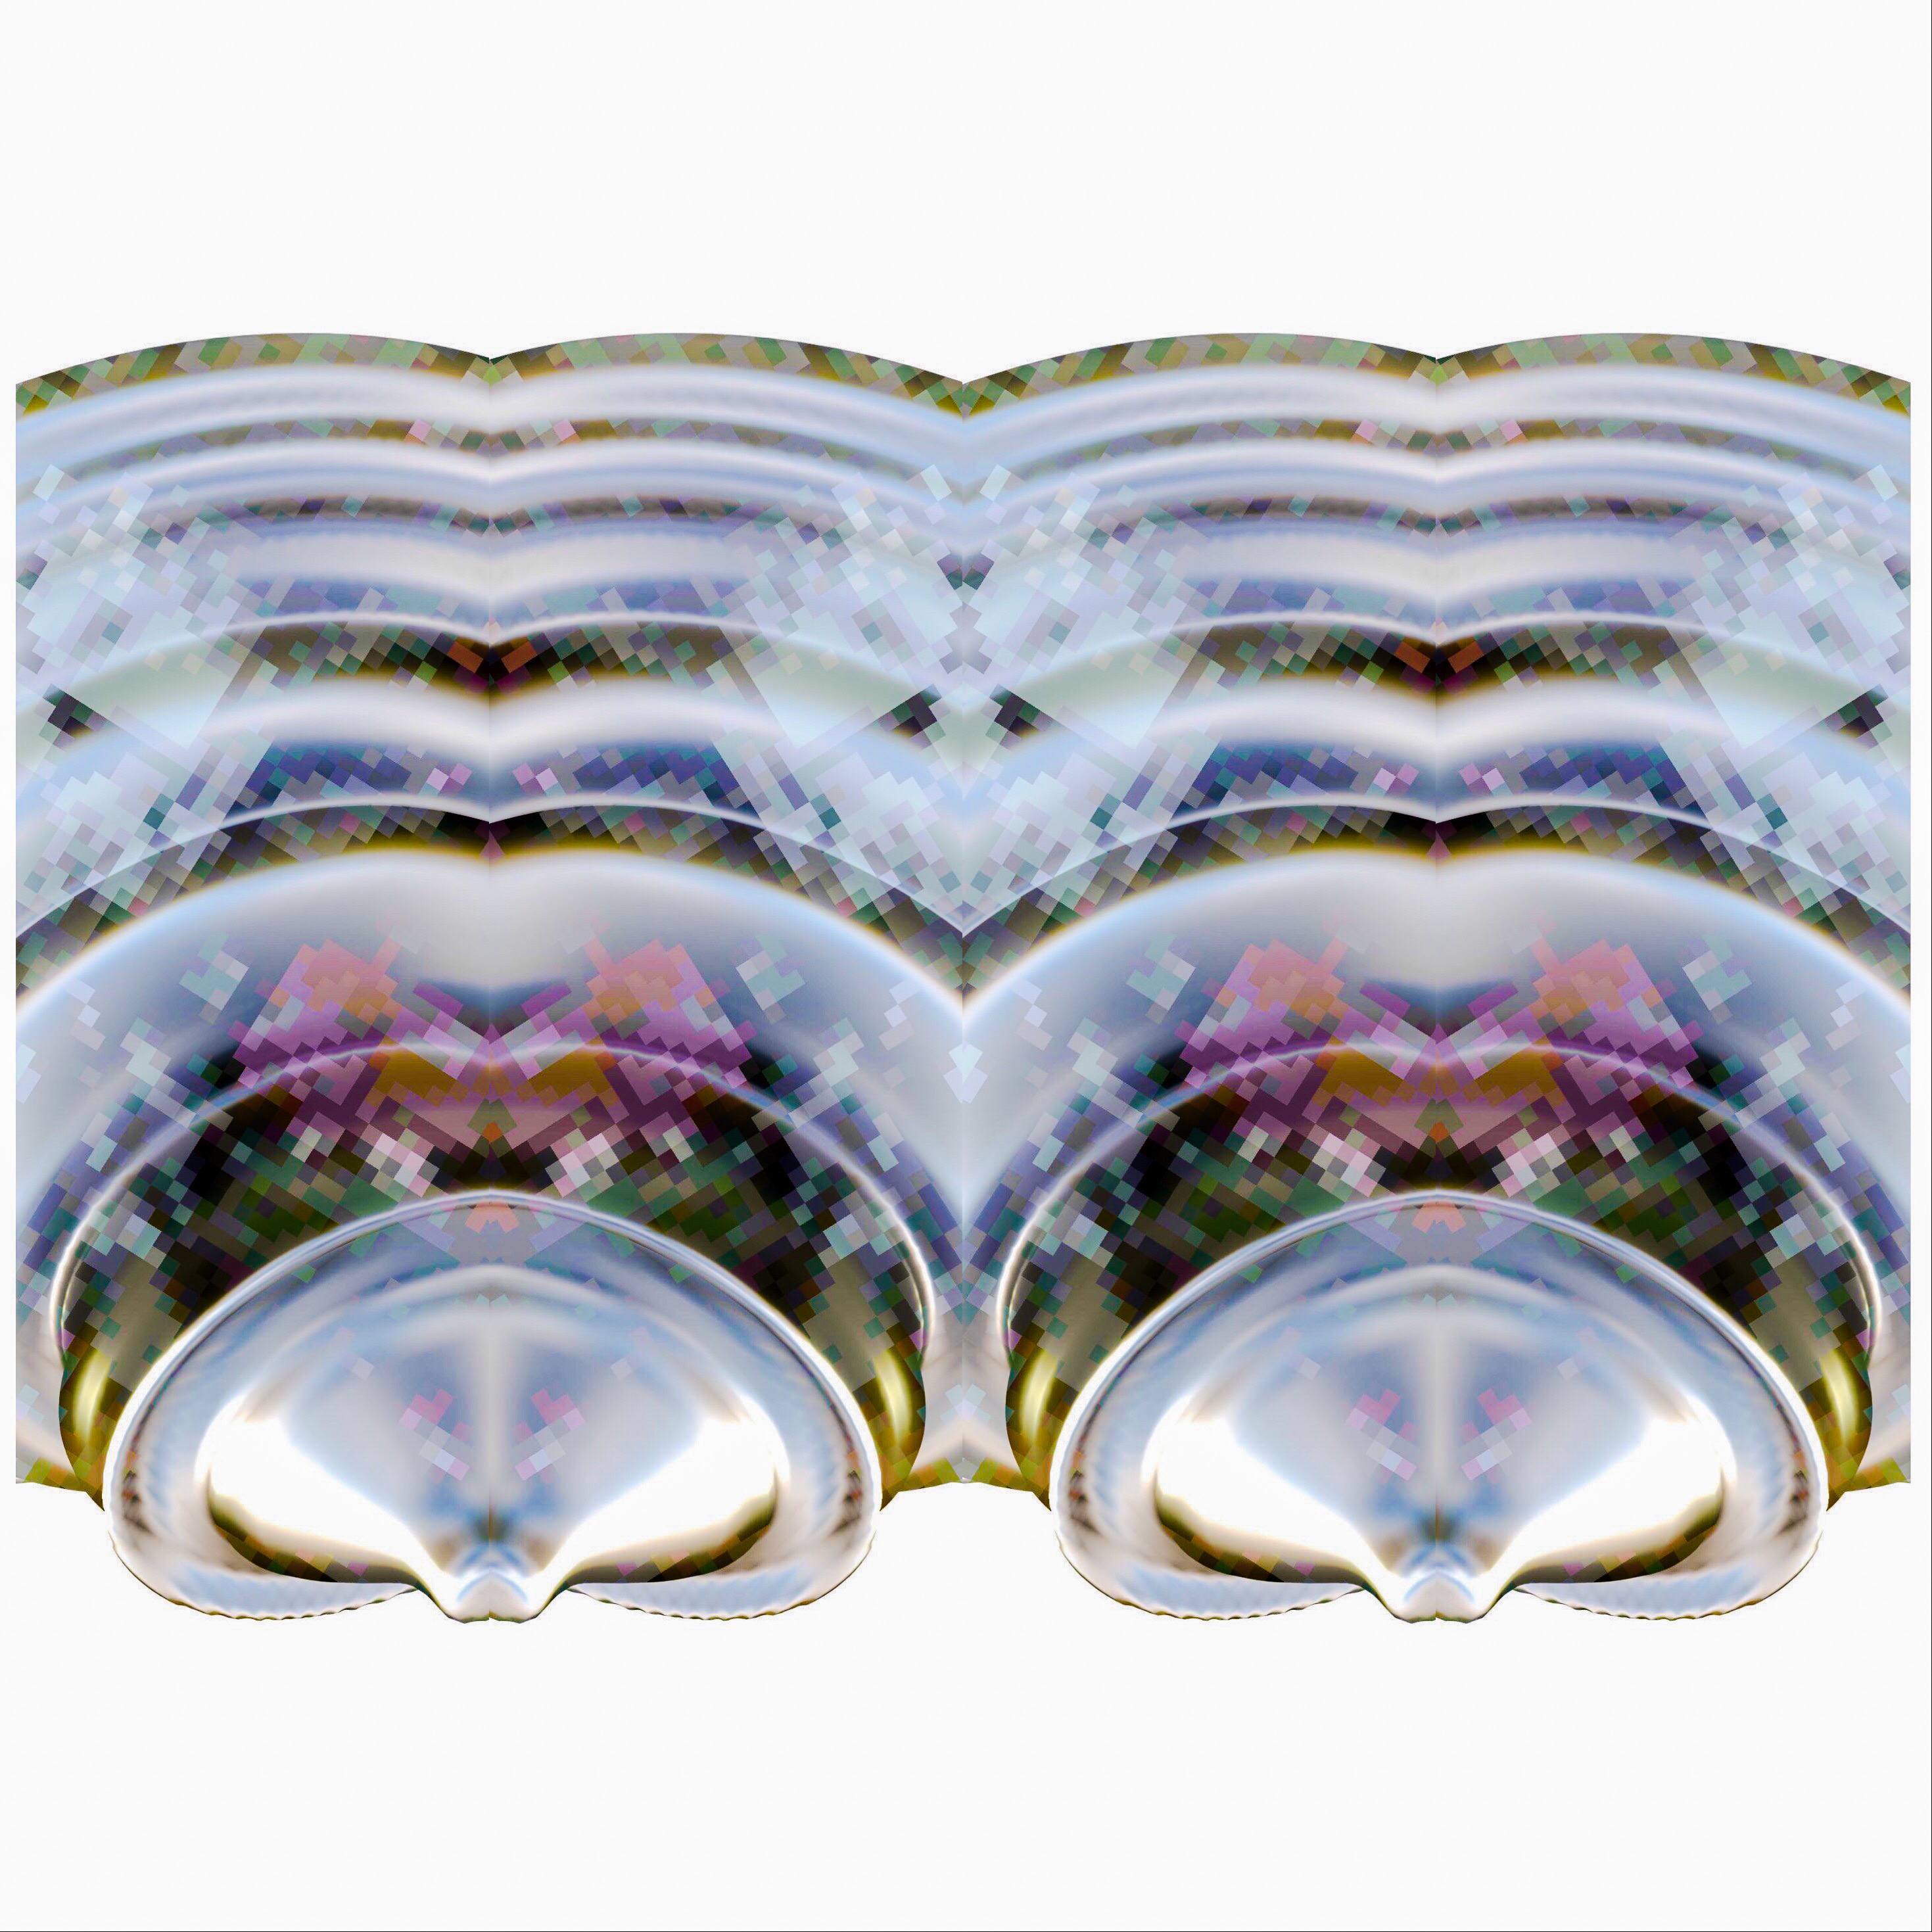 Una imagen de abalorios de la Confederación Haudenosaunee realizada en software 3D utilizando imágenes de colecciones de abalorios de museos. Los colores incluyen plata, oro, rosa, azul y morado. Su aspecto es similar al de una concha o almeja de río.